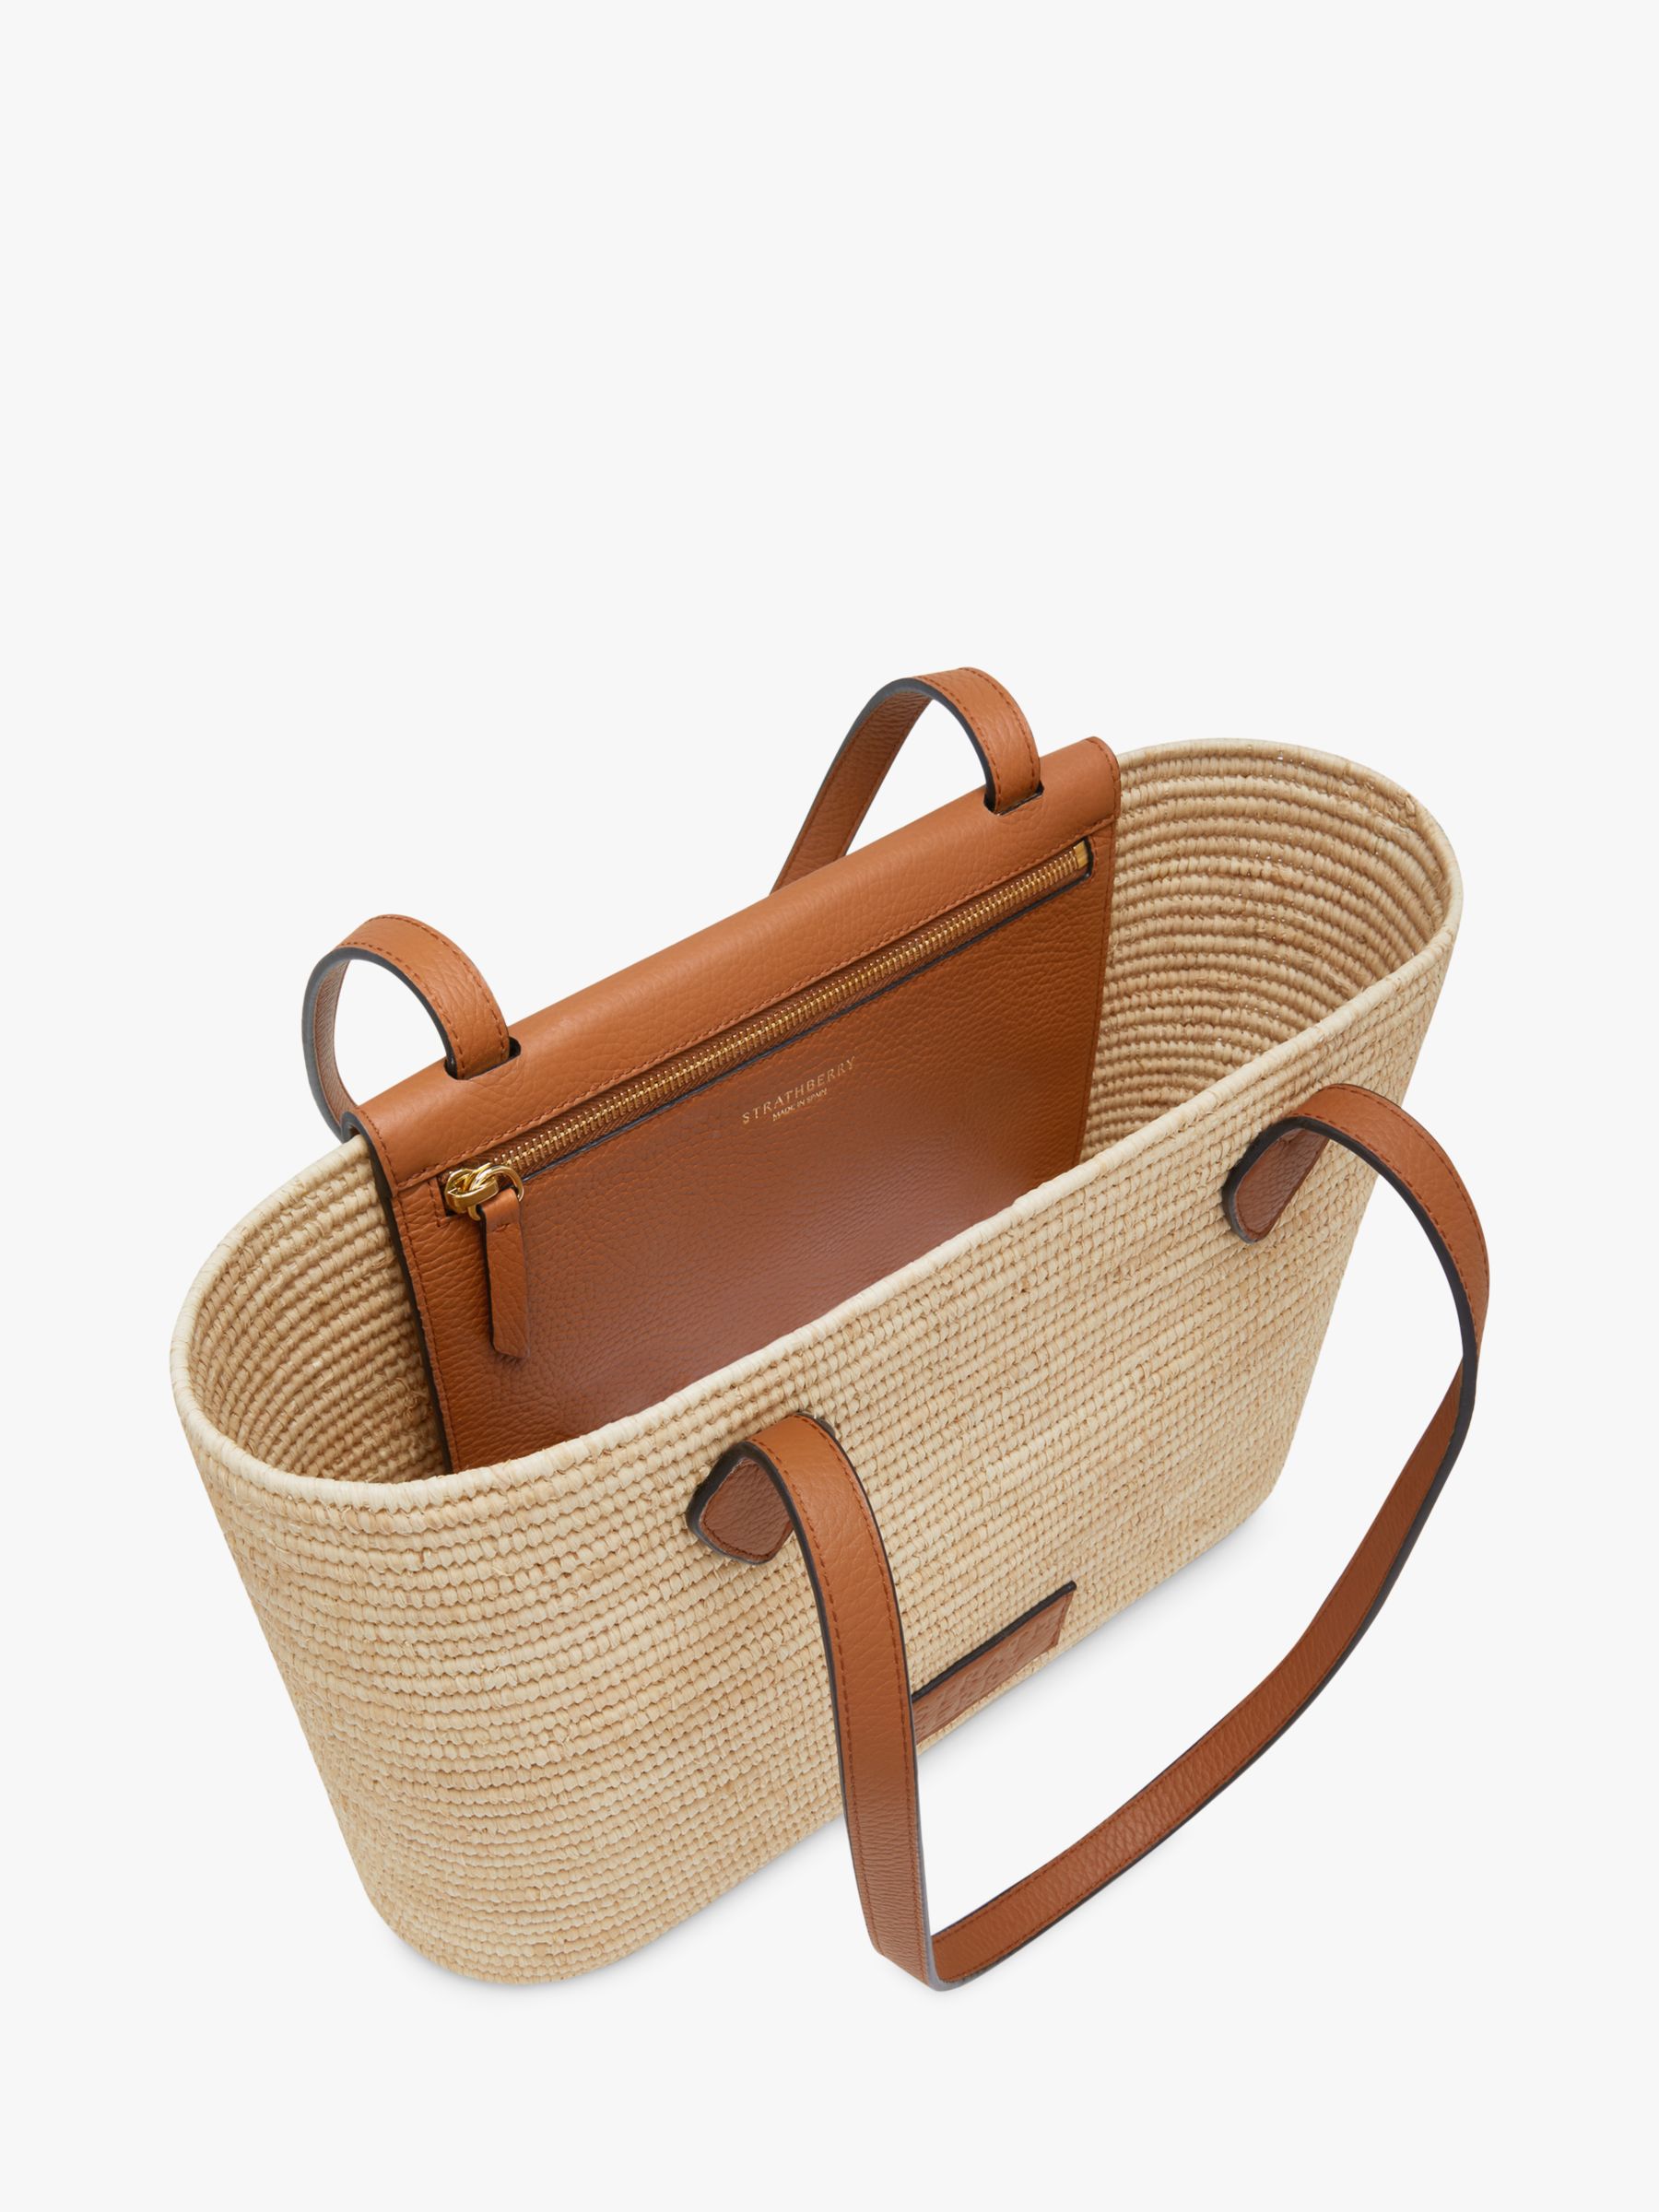 Strathberry Raffia and Leather Basket Shoulder Bag, Tan